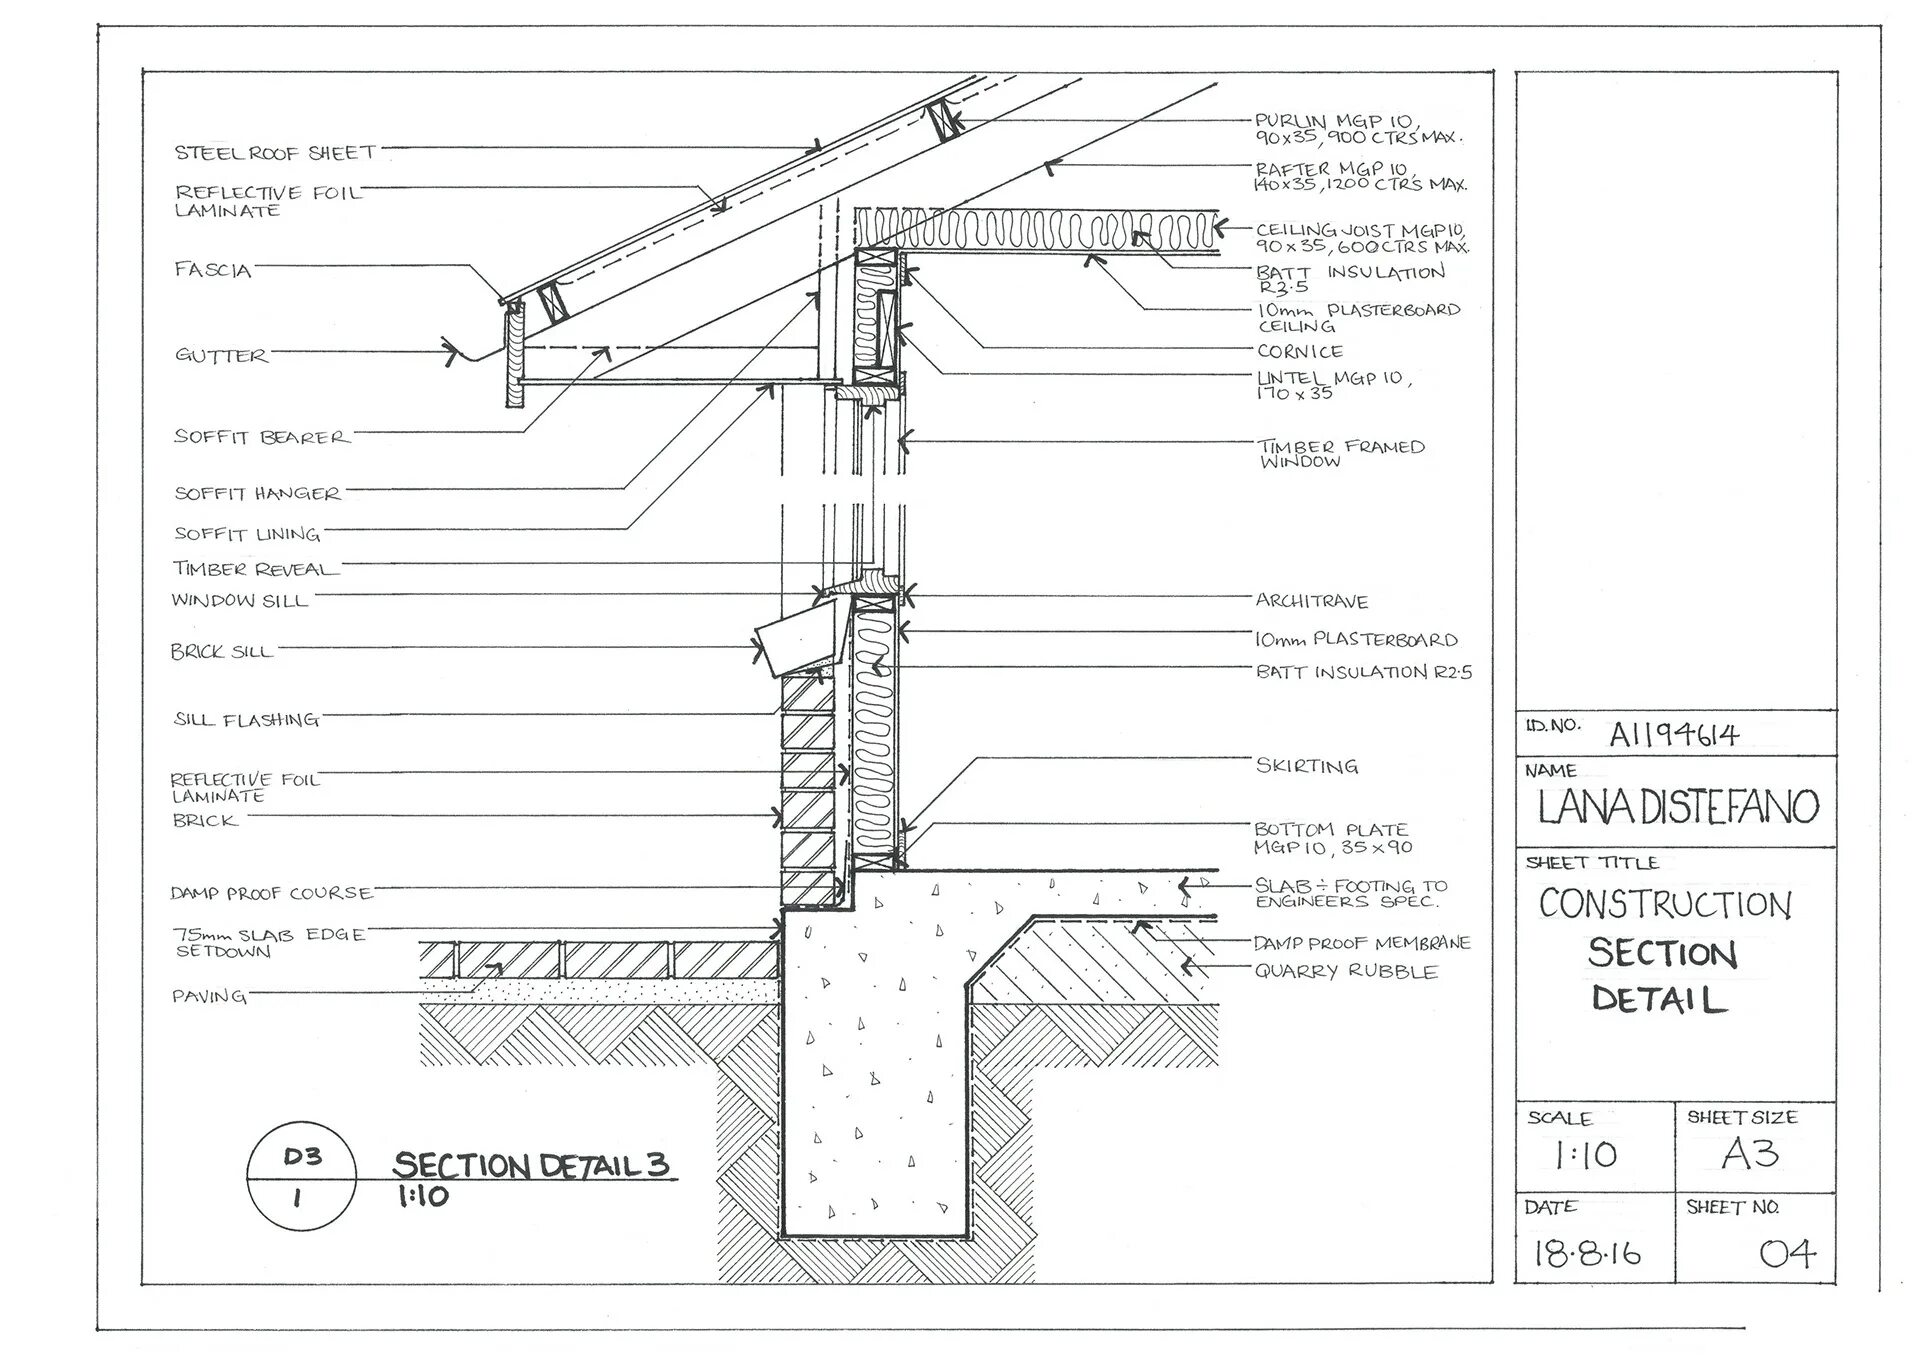 Detail. Detail drawing. Measurement in Construction. Typical Wall Section detail. Section and detail indicators.